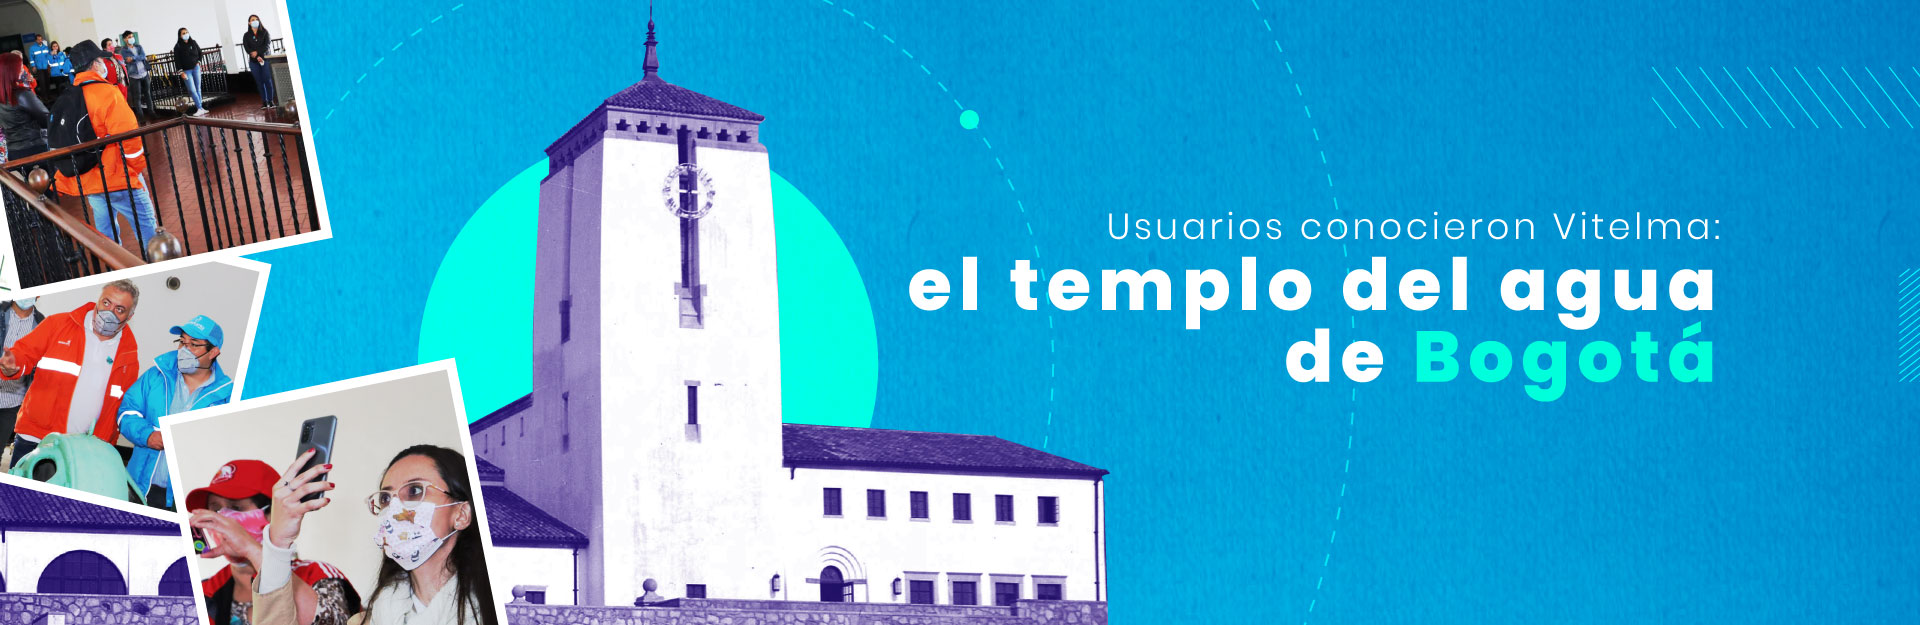 Usuarios conocieron Vitelma: el templo del agua de Bogotá